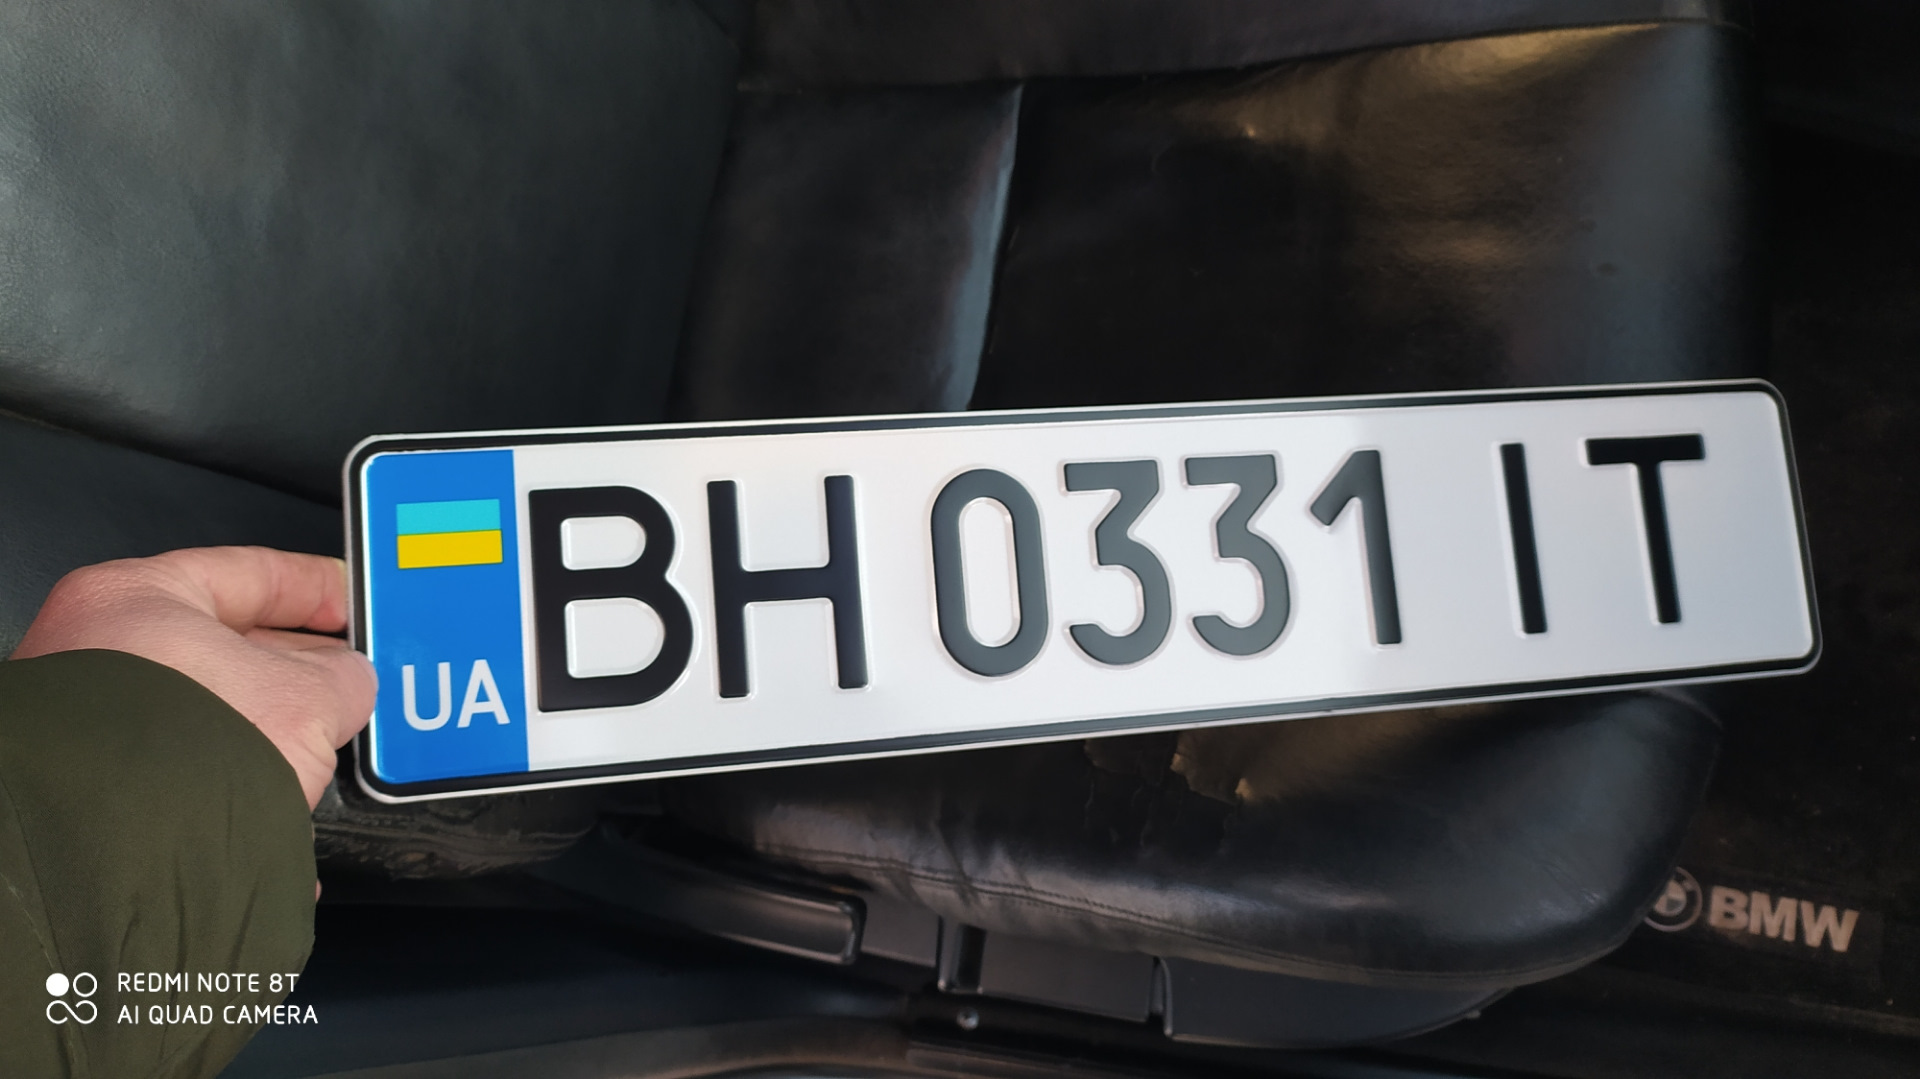 Армянские номера на машине в россии. Прикольные номерные знаки про БМВ. БМВ на номерах 117. БМВ номера х500хх. Прикольные номерные знаки в Литве.